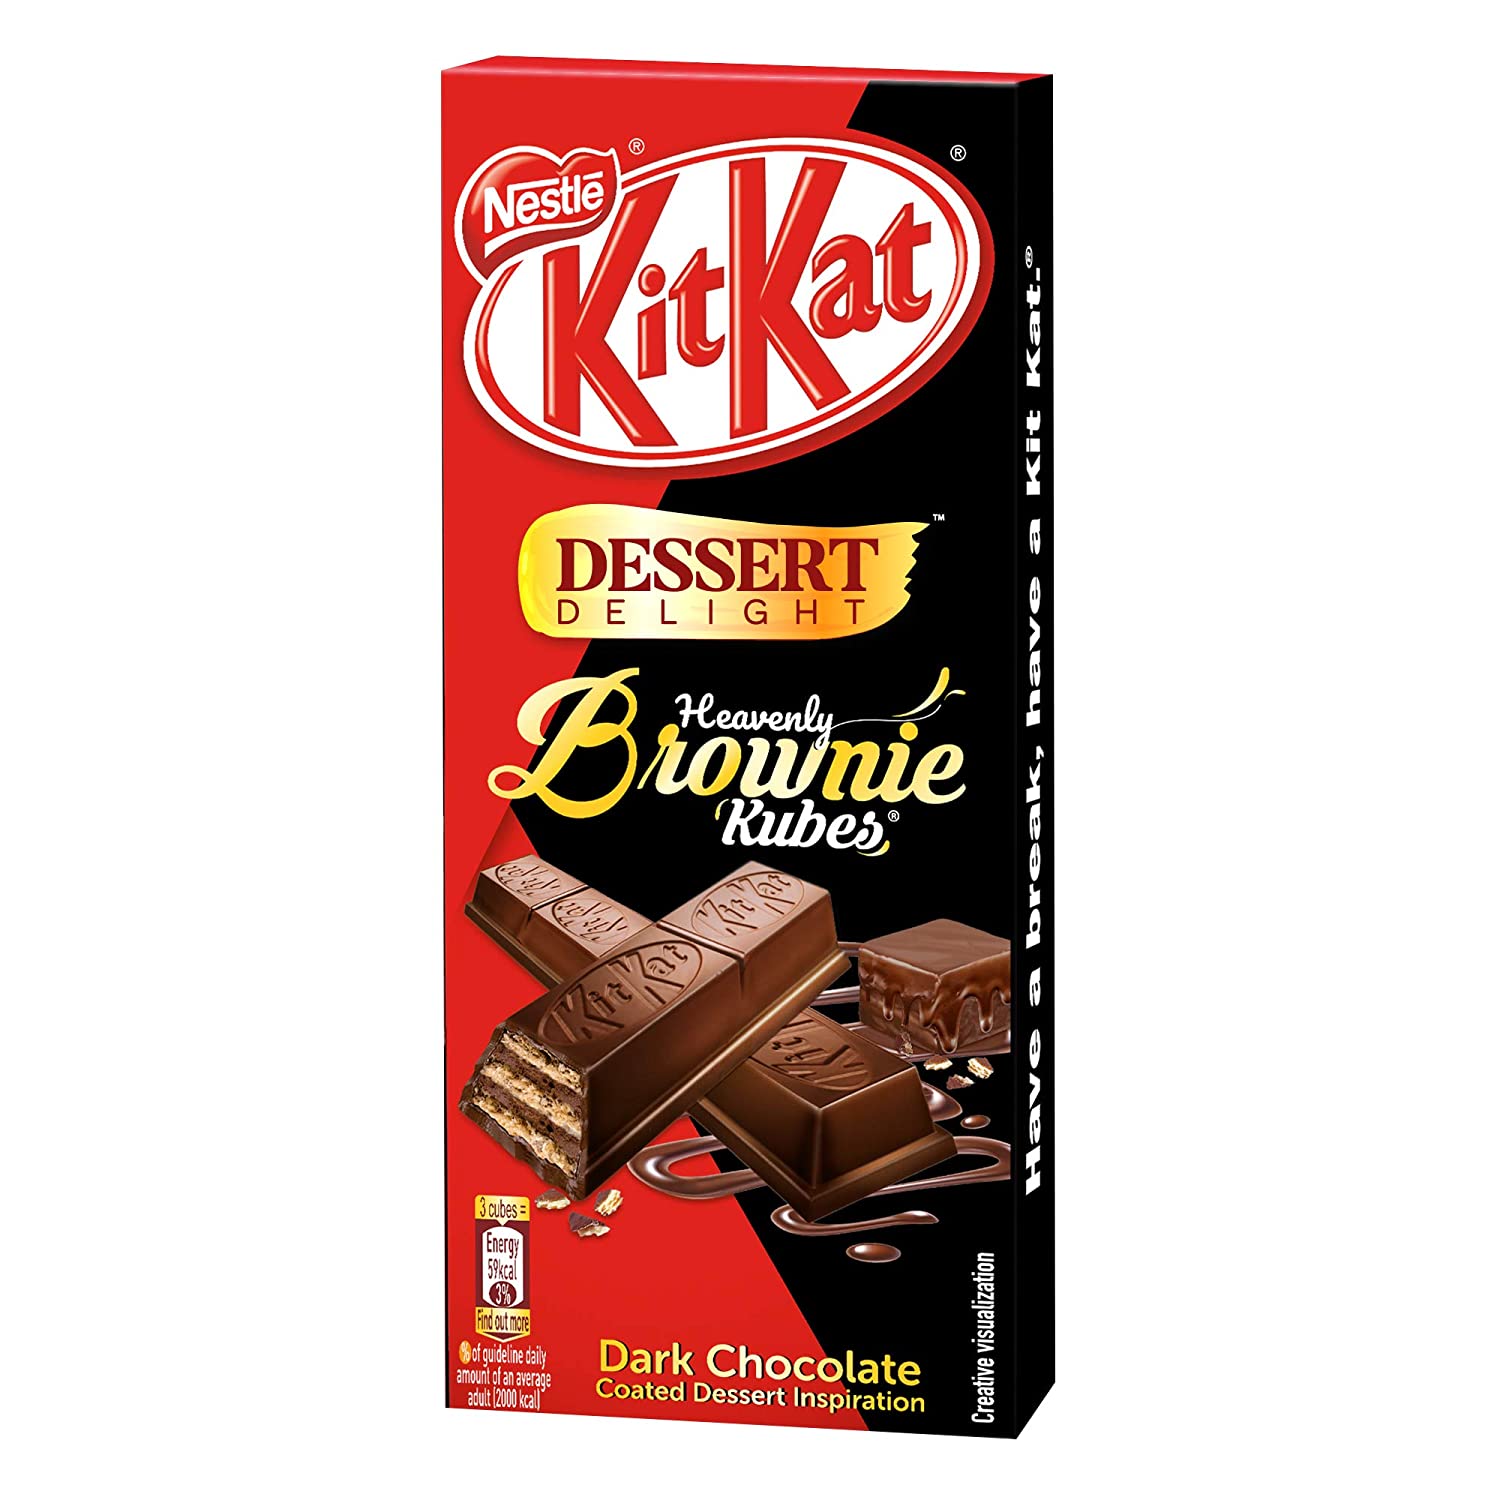 Nestle KitKat Dessert Delight Heavenly Brownie Kubes 